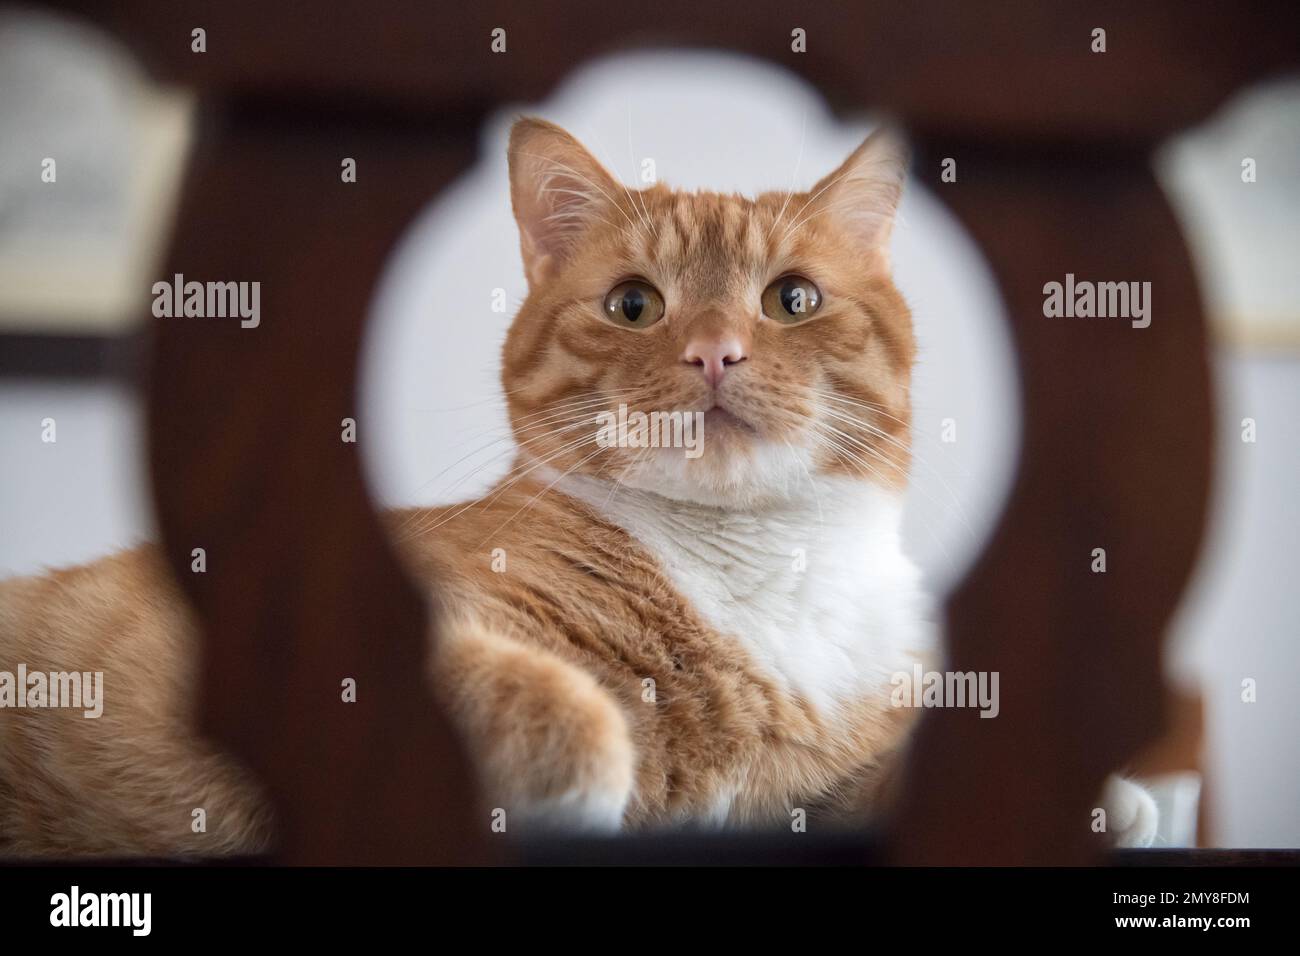 Home cat © Wojciech Strozyk / Alamy Stock Photo Stock Photo